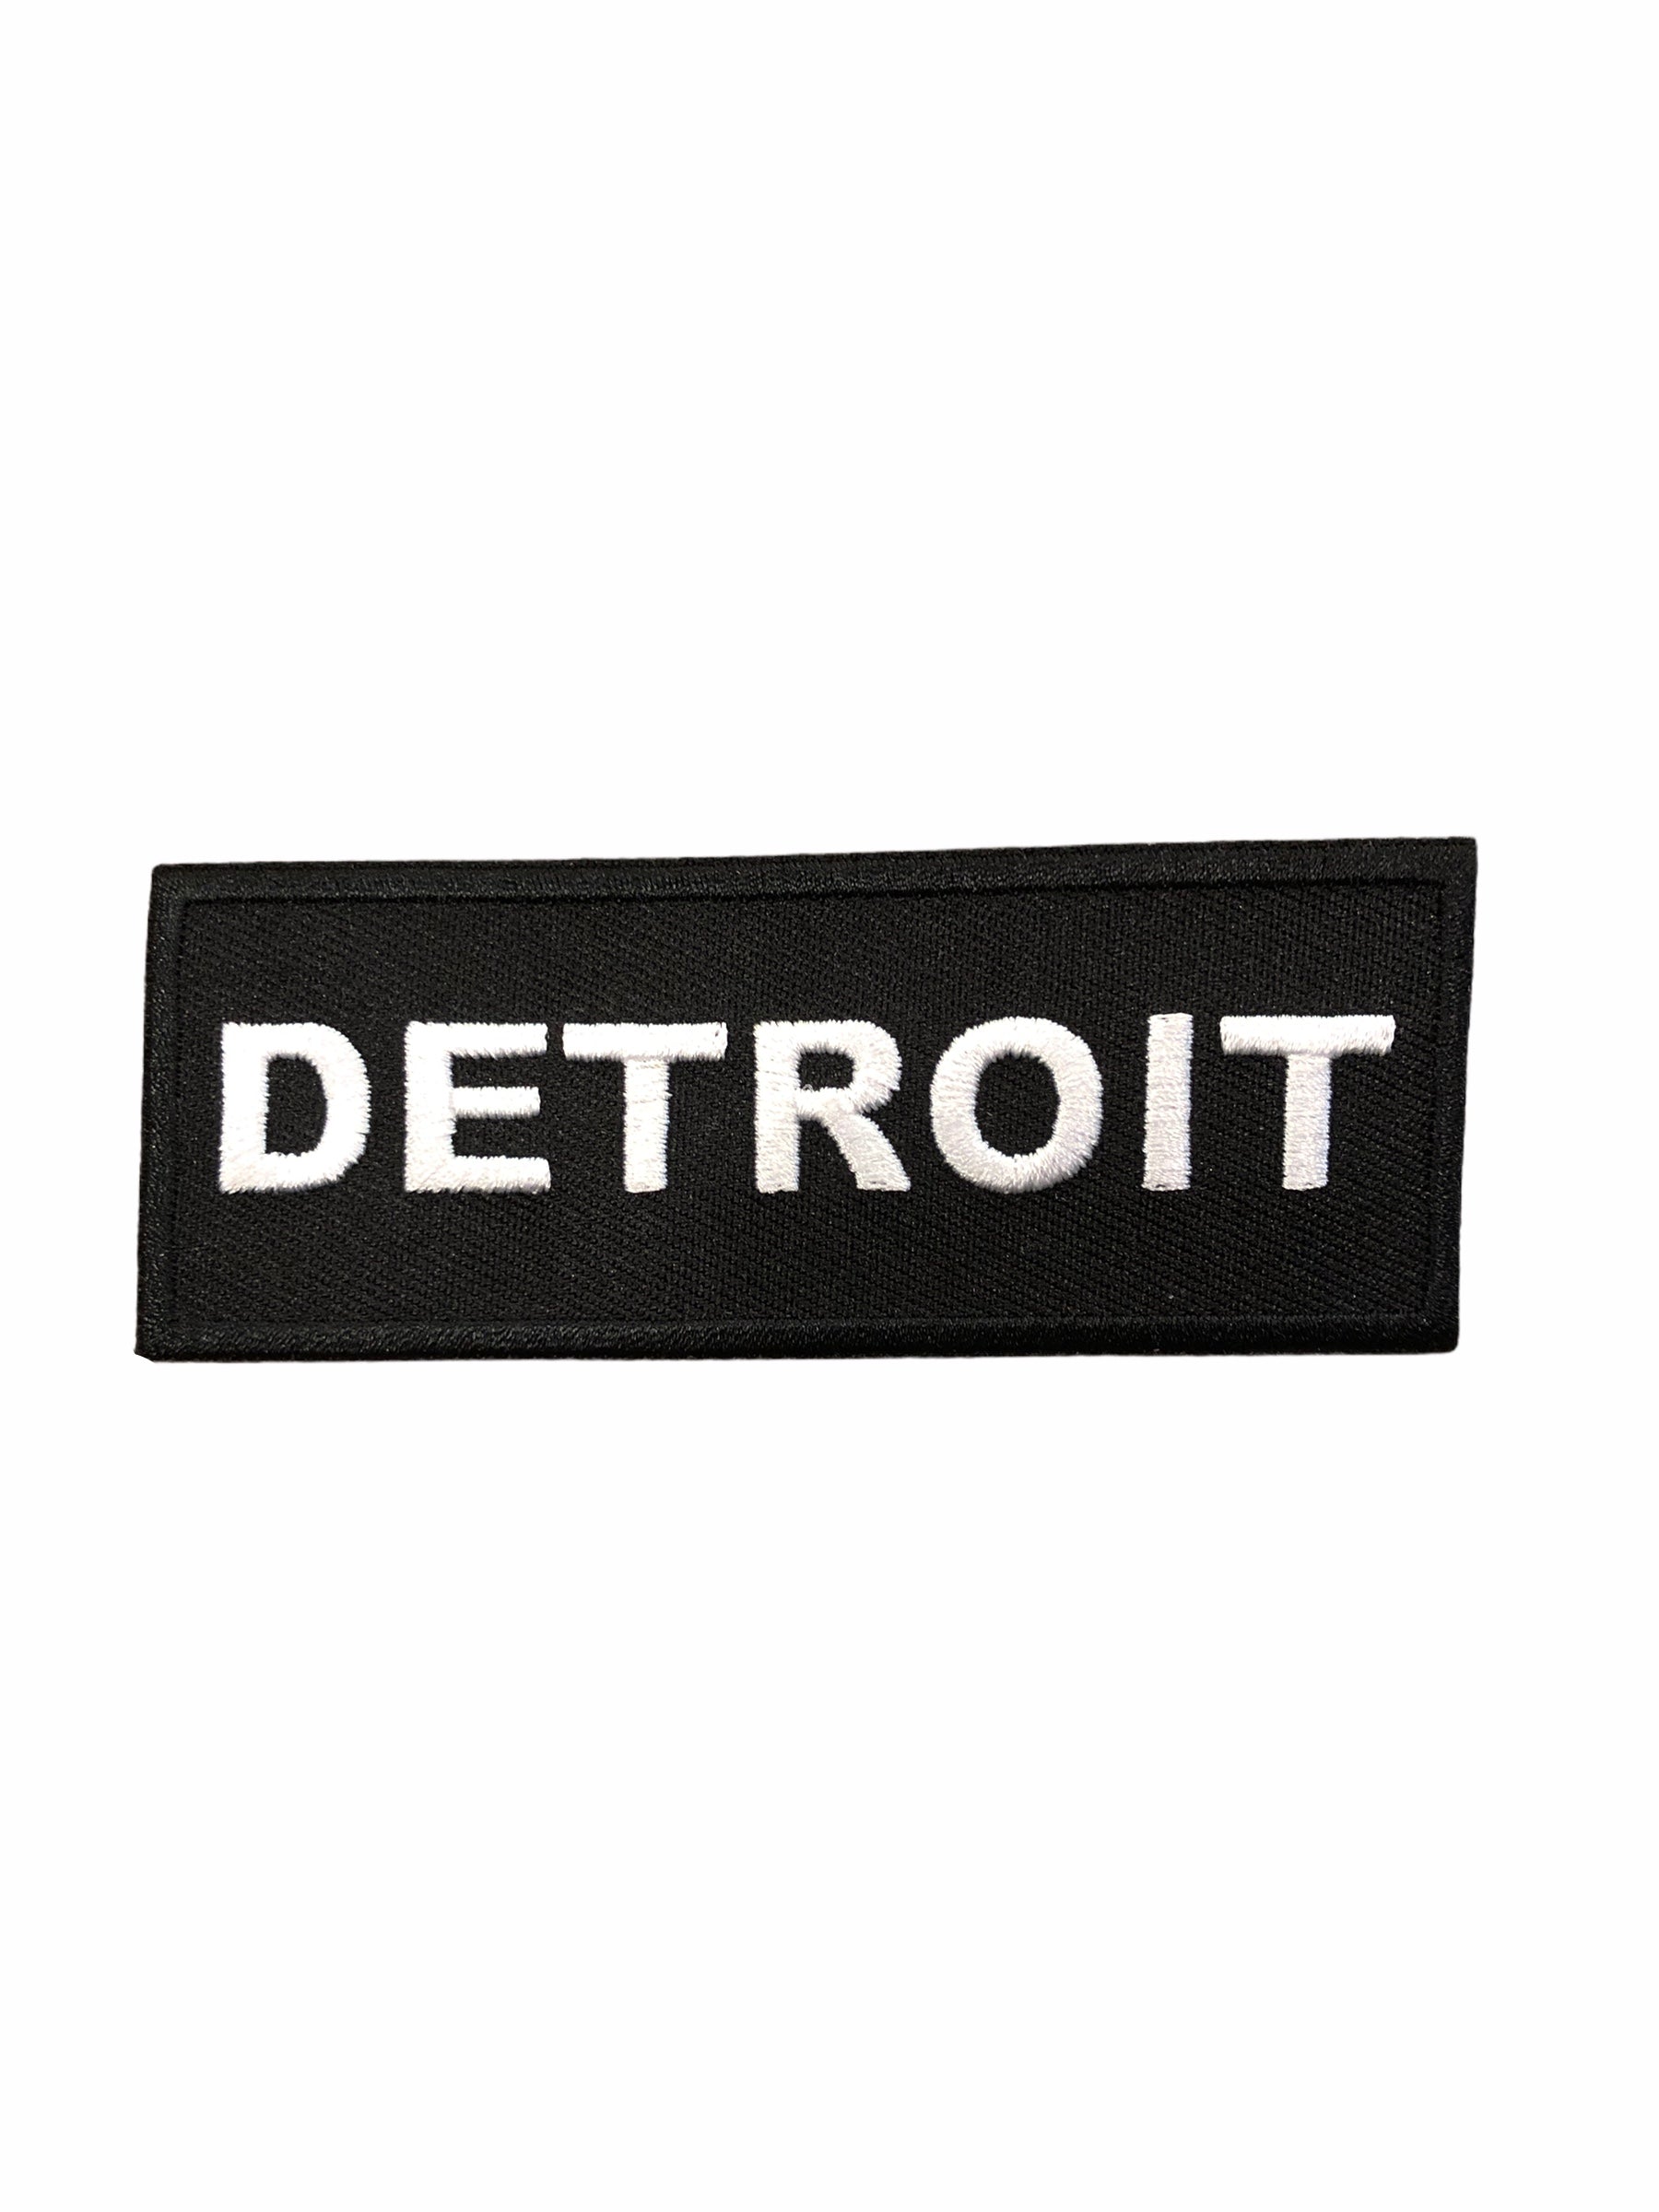  Detroit Patch